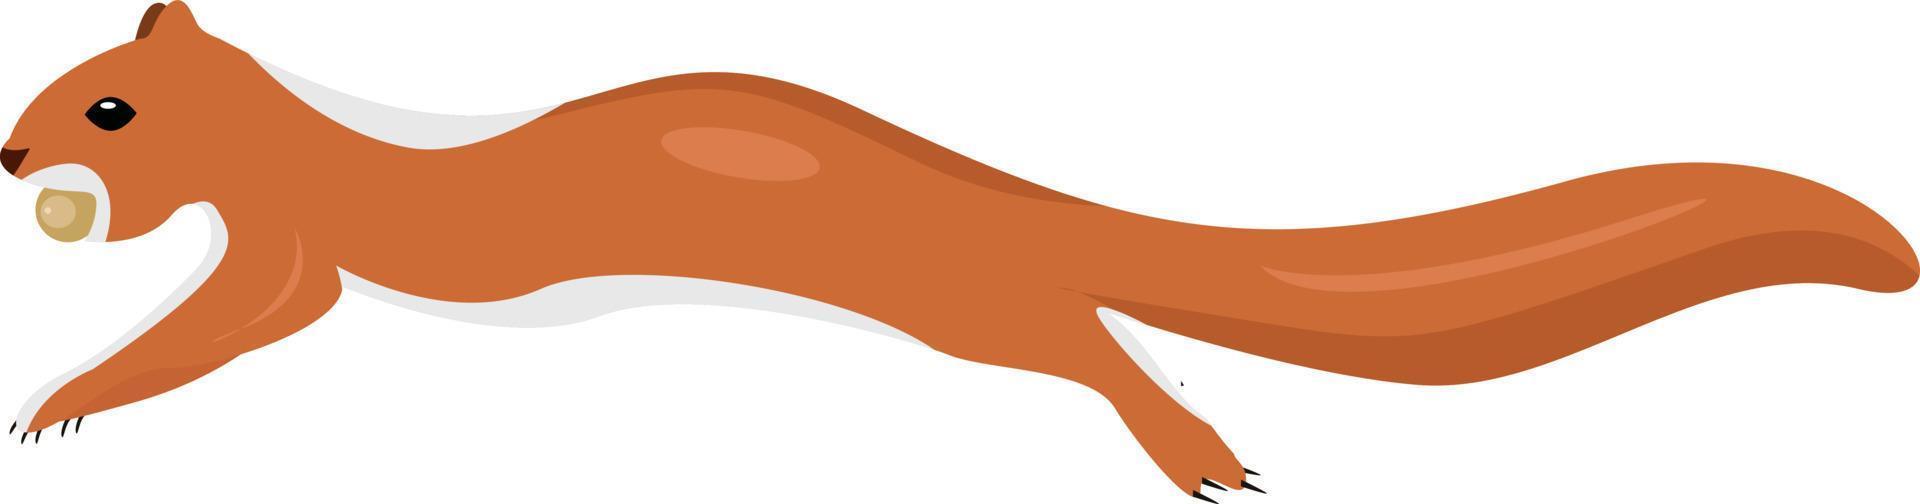 ardilla marrón, ilustración, vector sobre fondo blanco.